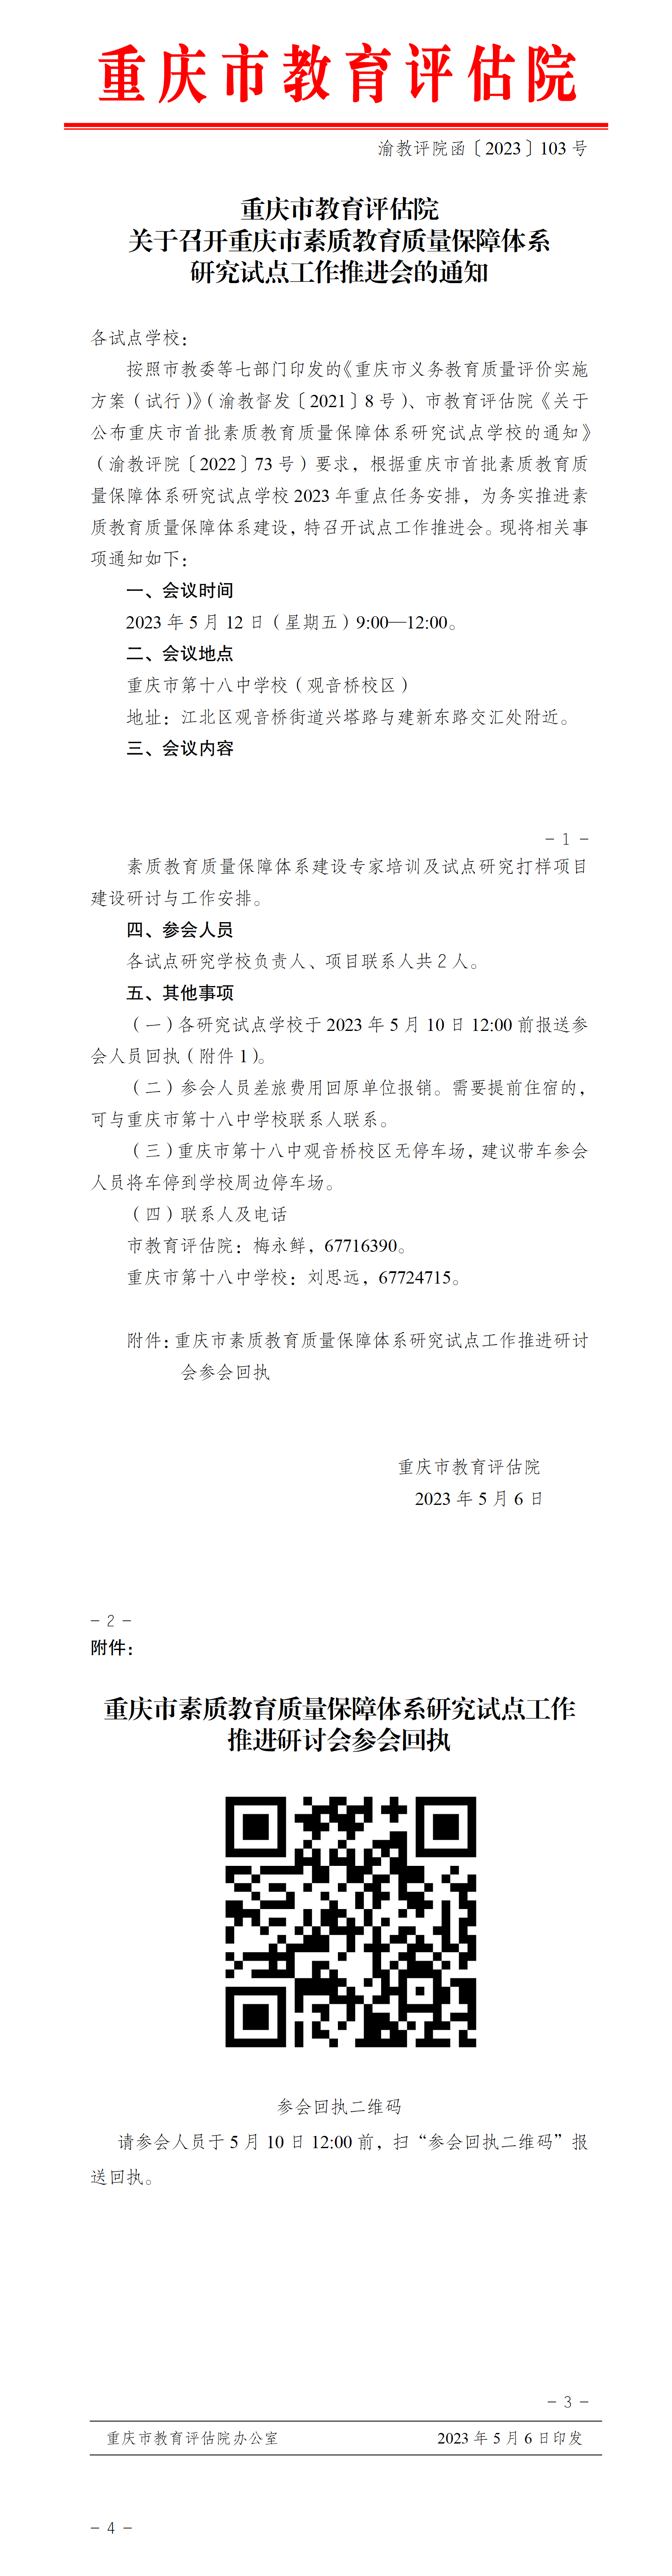 重庆市教育评估院关于召开重庆市素质教育质量保障体系研究试点工作推进会的通知(3)_01(3).png